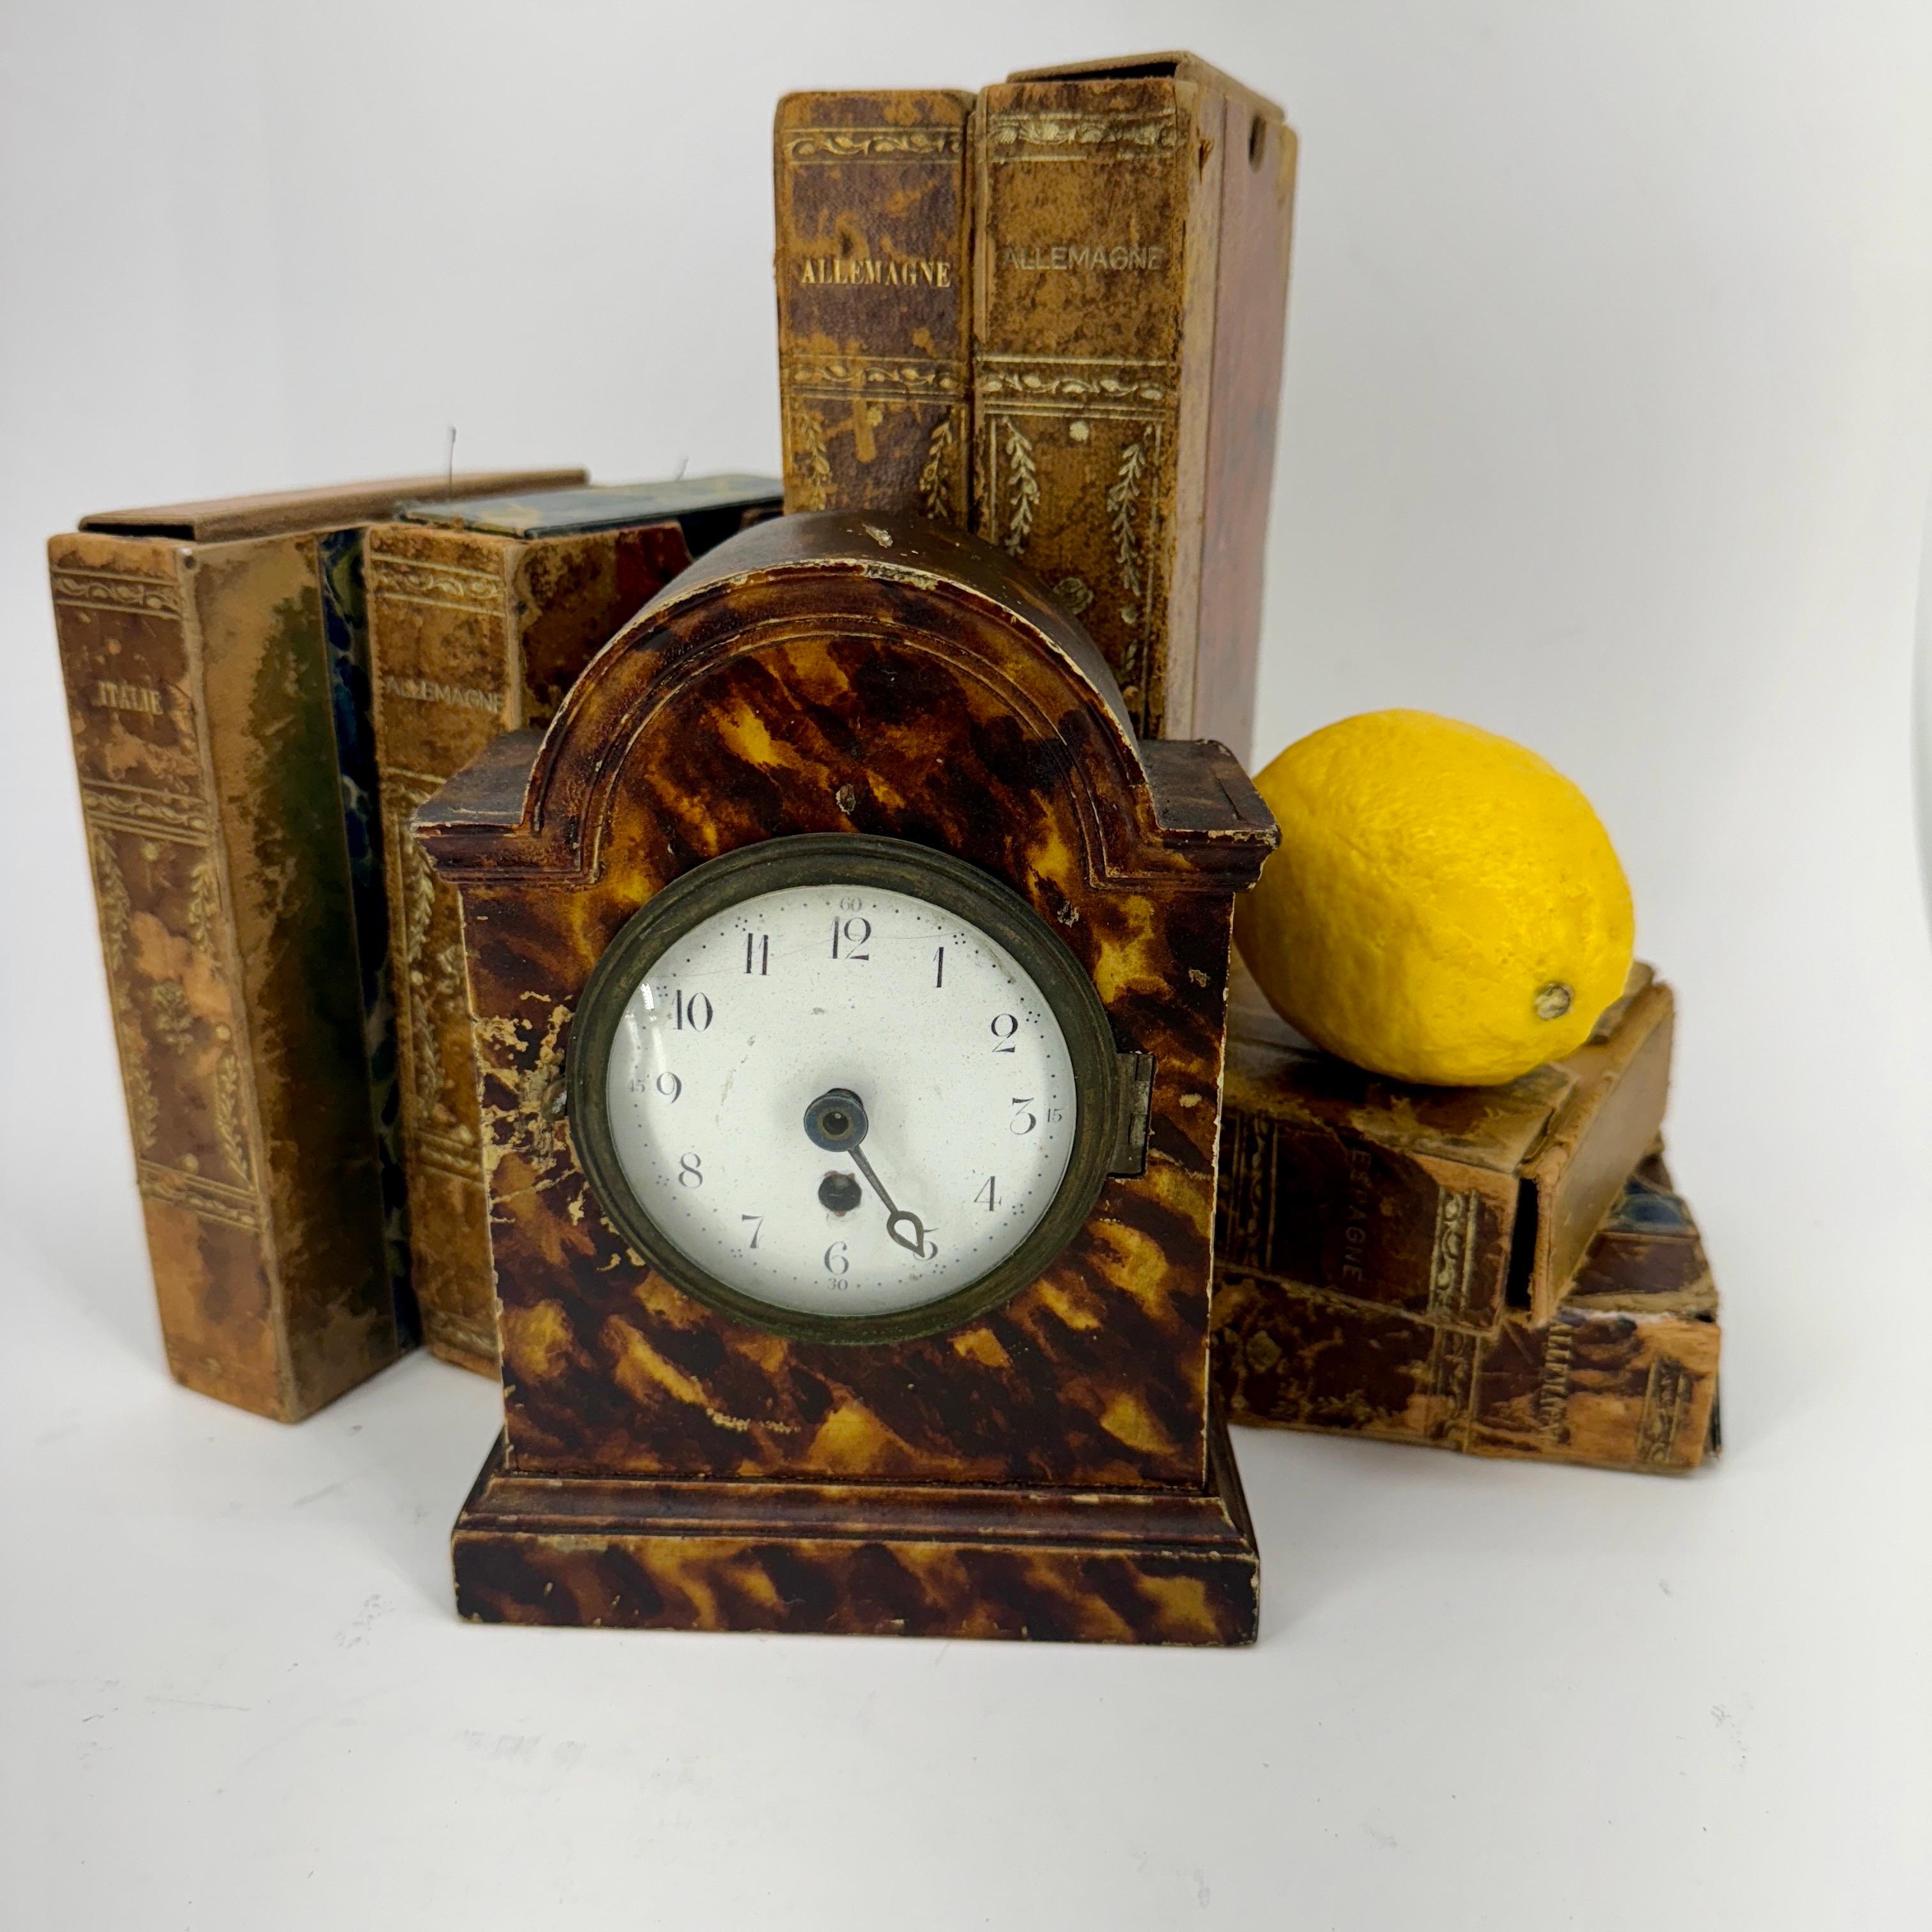 Horloge de table décorative en fausse écaille de tortue, début 1900, France.
 
Charmante petite horloge de table avec cadran en émail blanc provenant de France. Telle qu'elle a été trouvée, cette horloge, avec tout son caractère, serait une